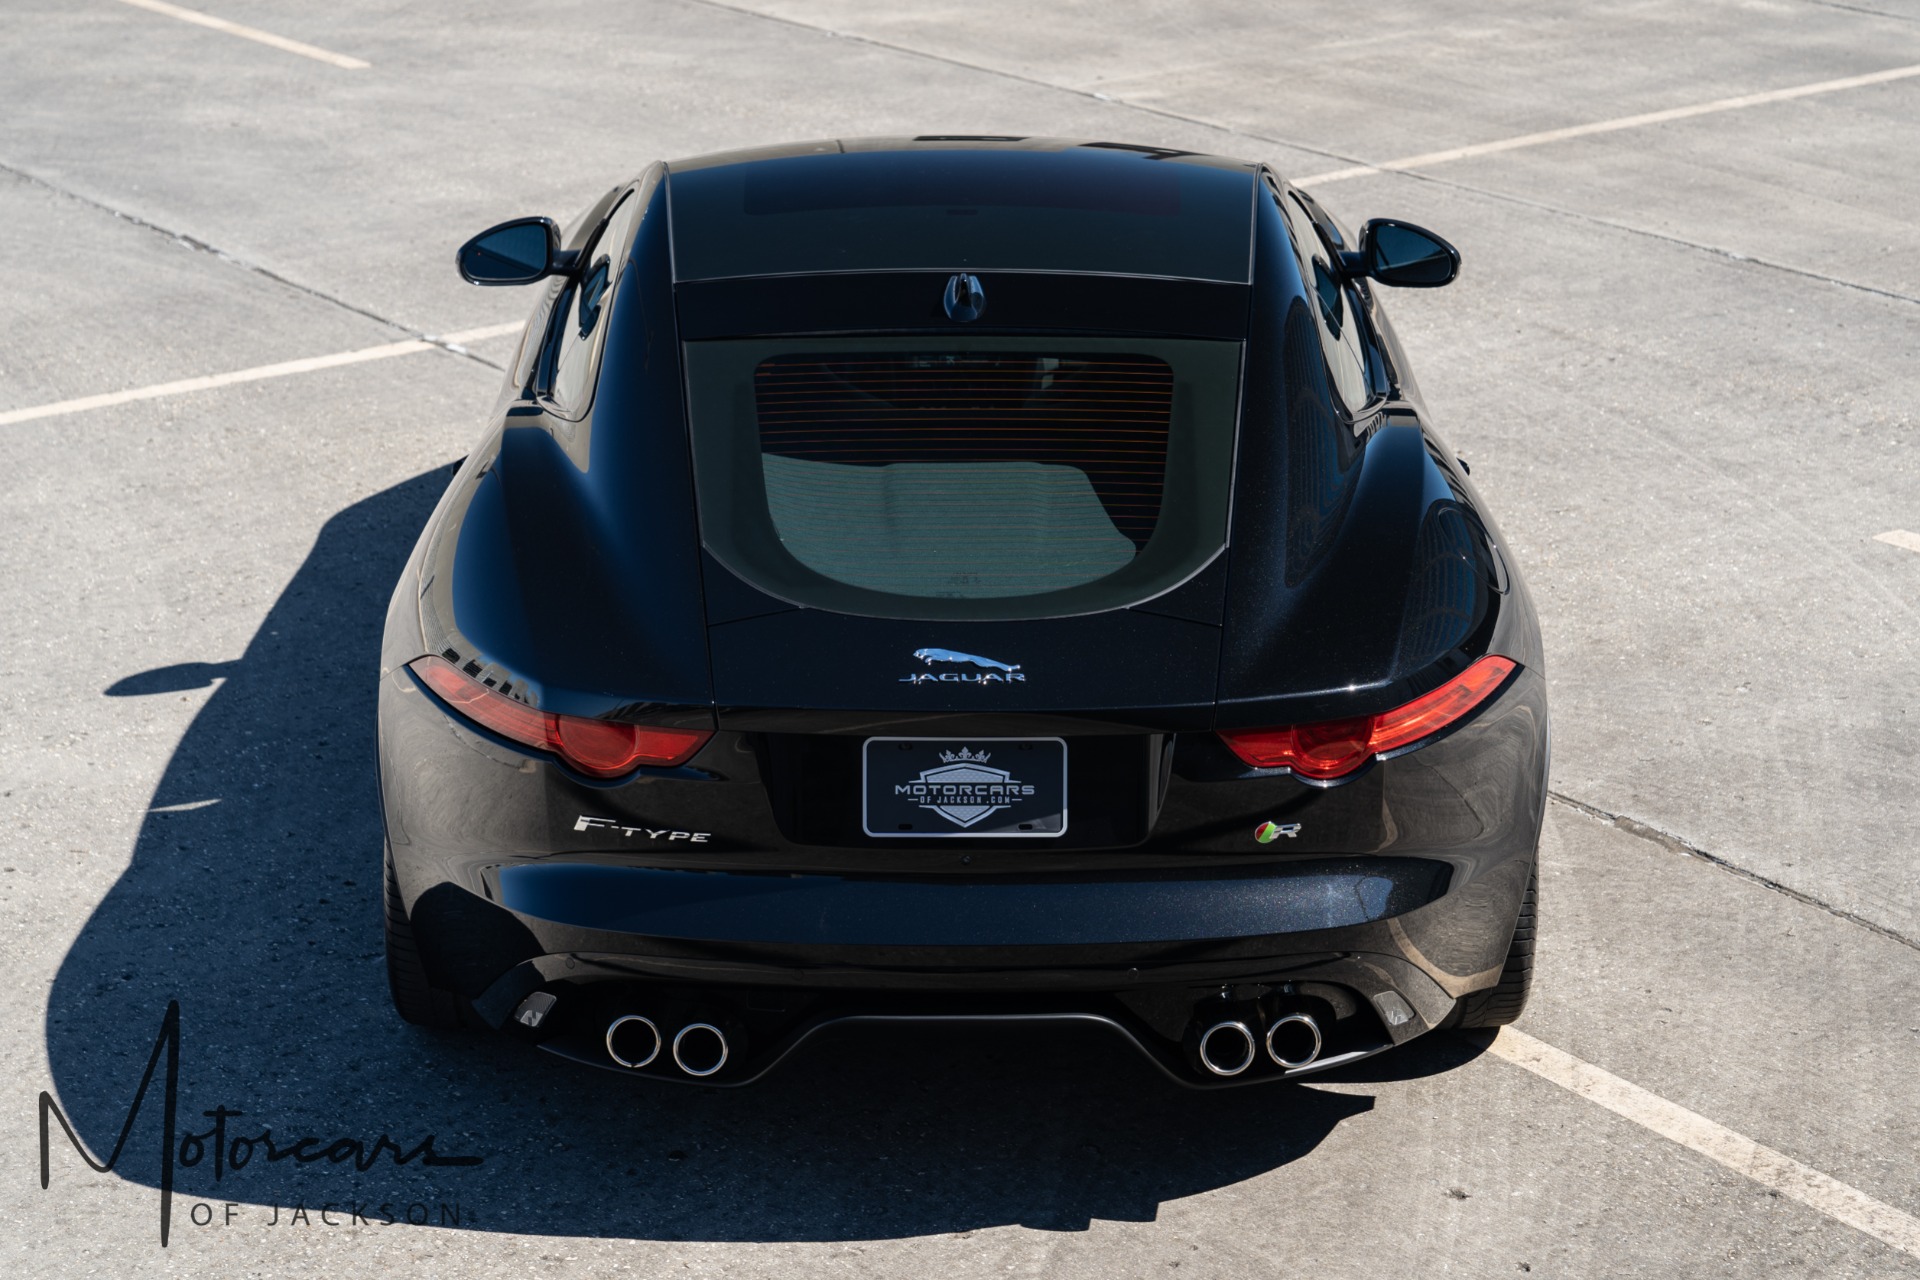 Used-2015-Jaguar-F-TYPE-V8-R-for-sale-Jackson-MS